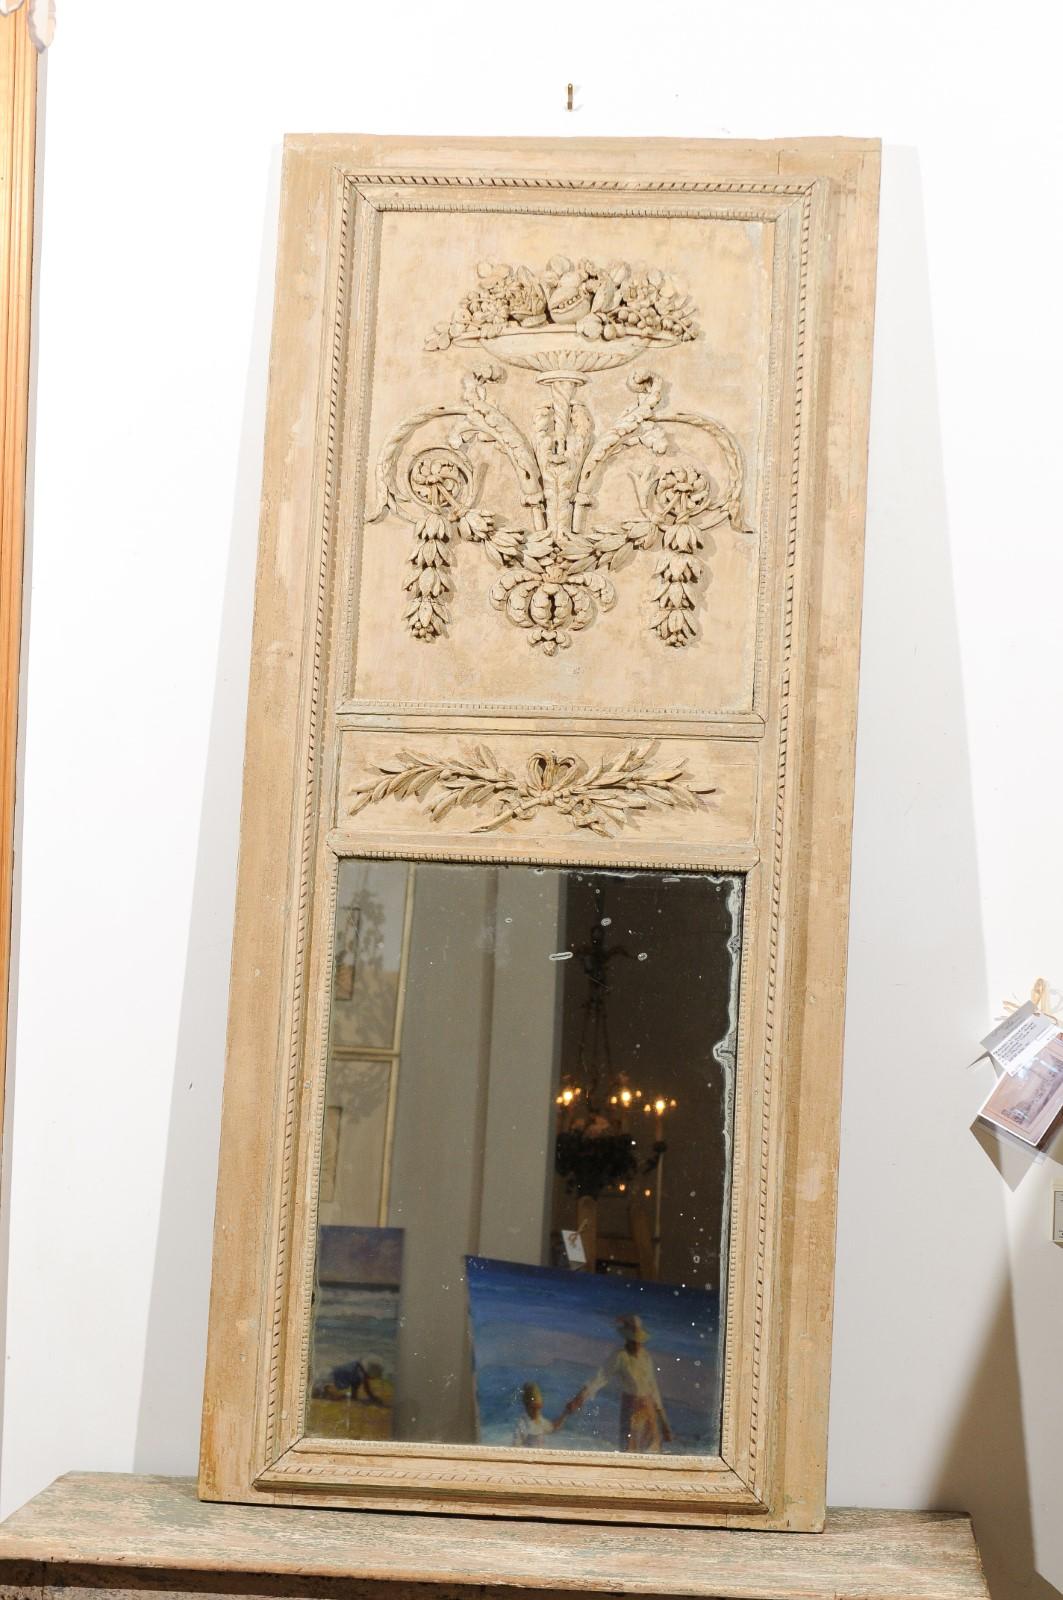 Ein französischer Trumeau-Spiegel aus bemaltem Holz aus der Zeit Ludwigs XVI. aus dem späten 18. Jahrhundert mit Blattwerk, Rankenwerk und Urnenmotiven. Dieser in Frankreich am Ende des Zeitalters der Aufklärung entstandene Louis XVI-Trumeau-Spiegel